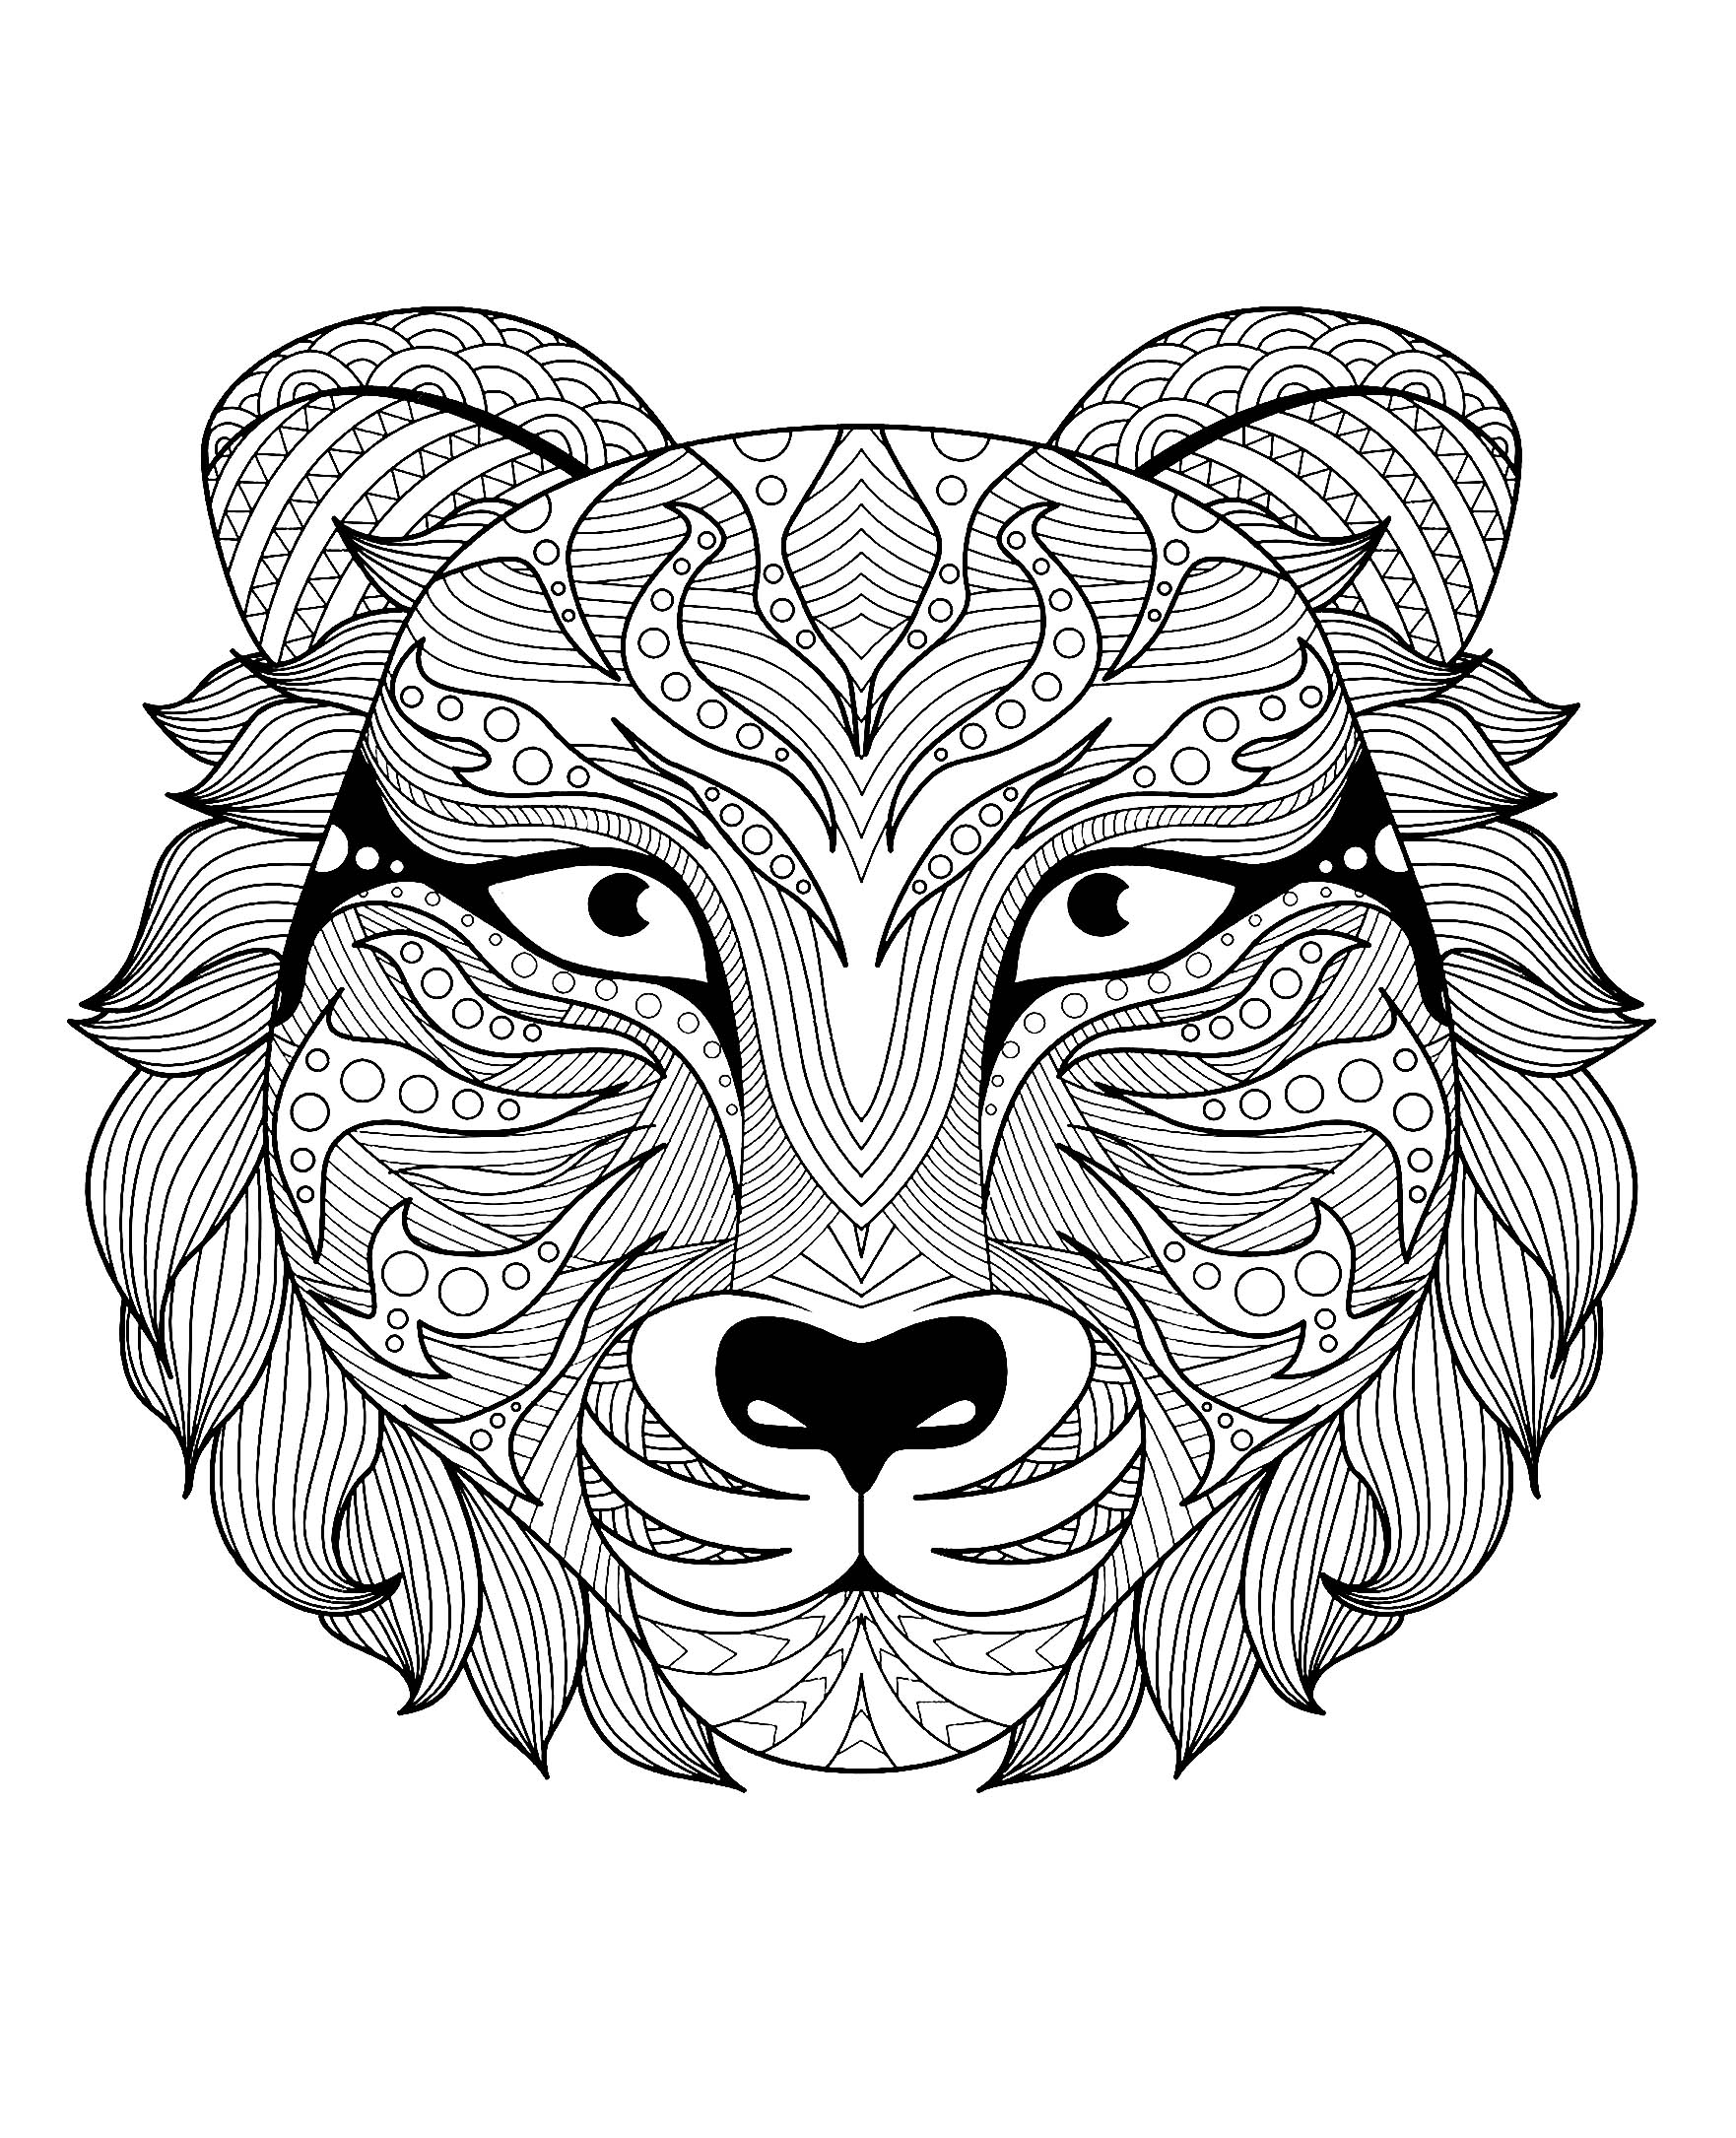 Hermosa cabeza de tigre, Artista : Bimdeedee   Origen : 123rf